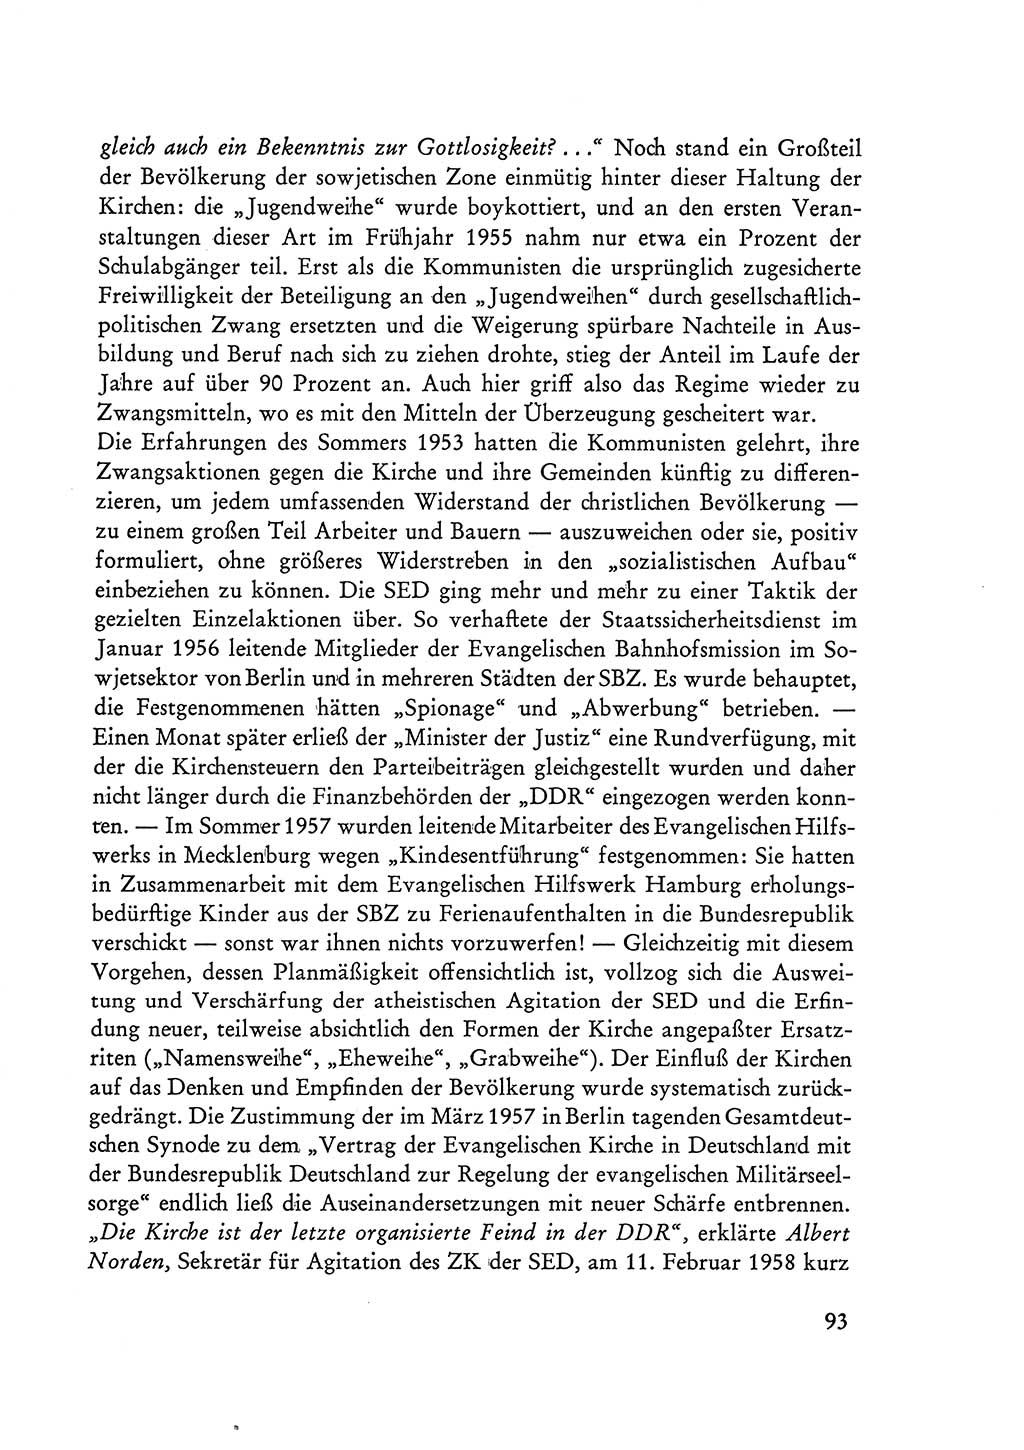 Selbstbehauptung und Widerstand in der Sowjetischen Besatzungszone (SBZ) Deutschlands [Deutsche Demokratische Republik (DDR)] 1964, Seite 93 (Selbstbeh. Wdst. SBZ Dtl. DDR 1964, S. 93)